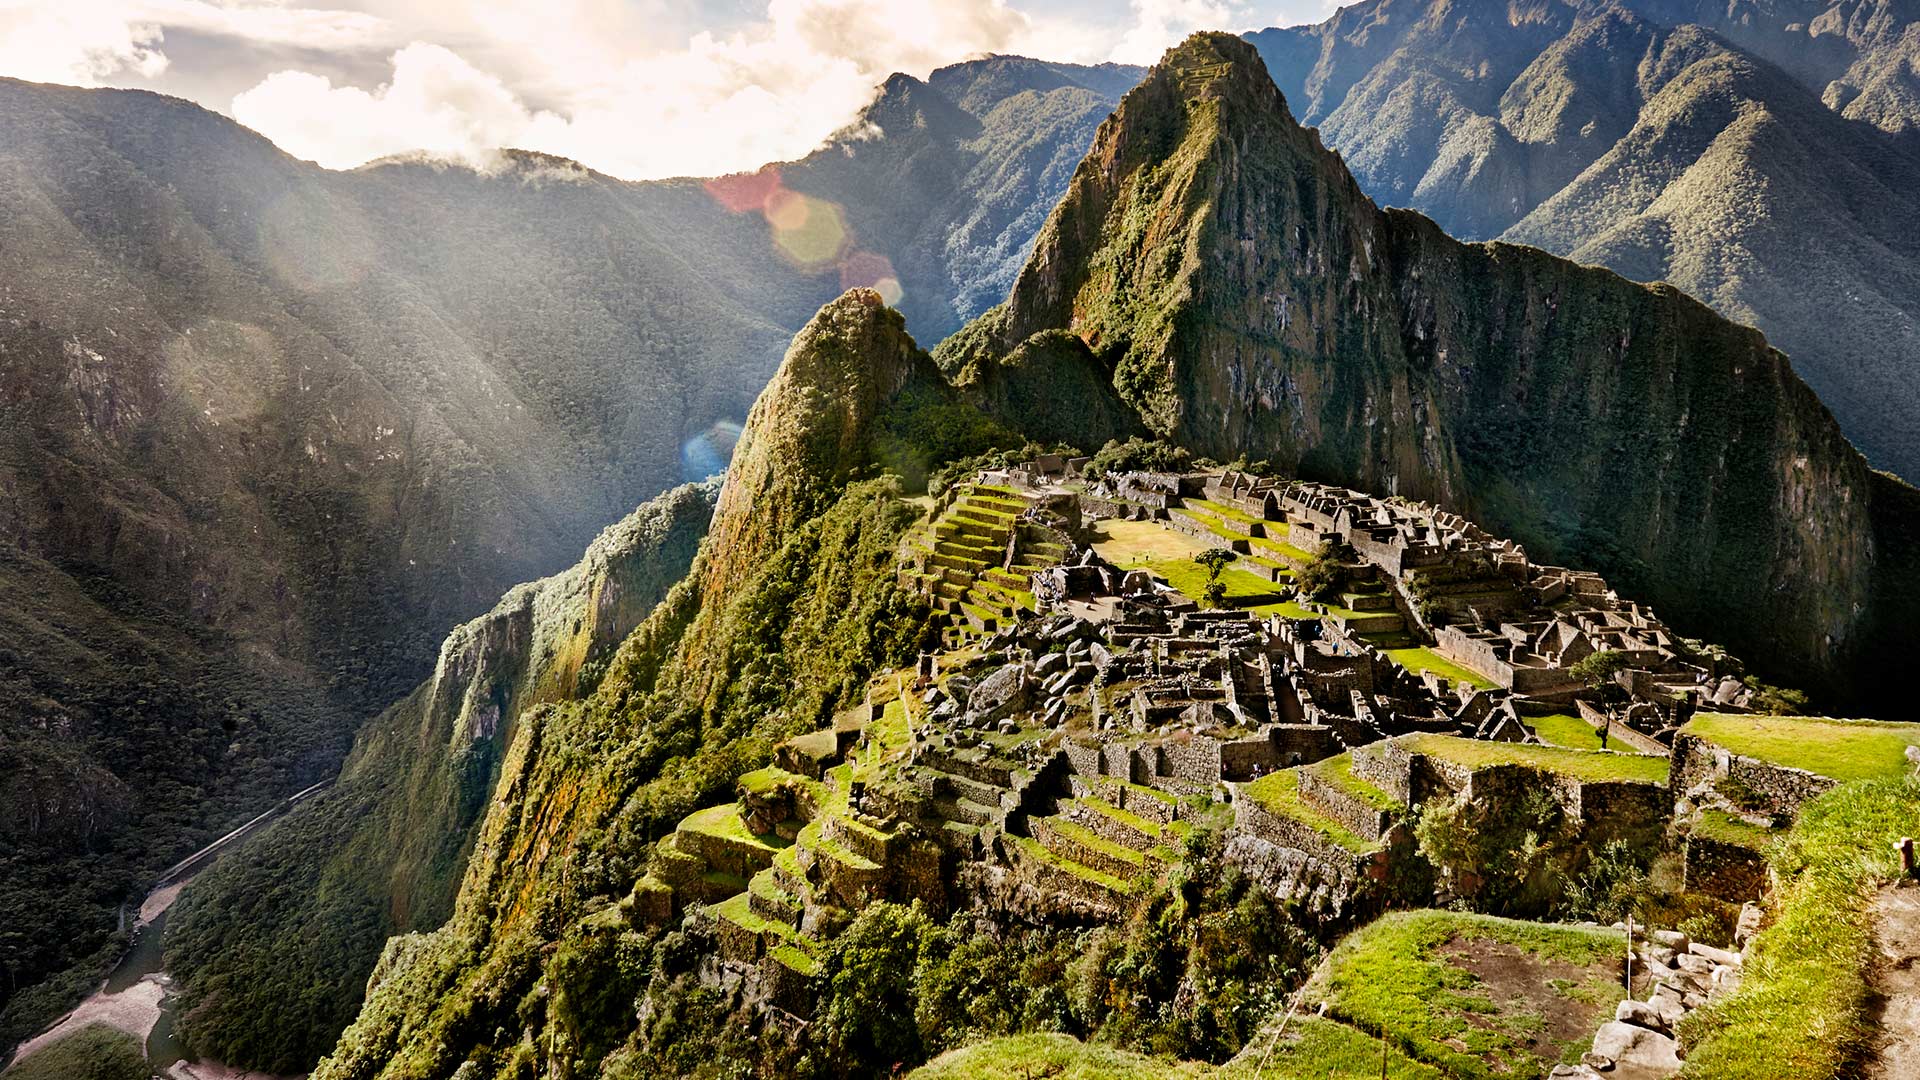 Servicio de guía de turistas en Machu Picchu